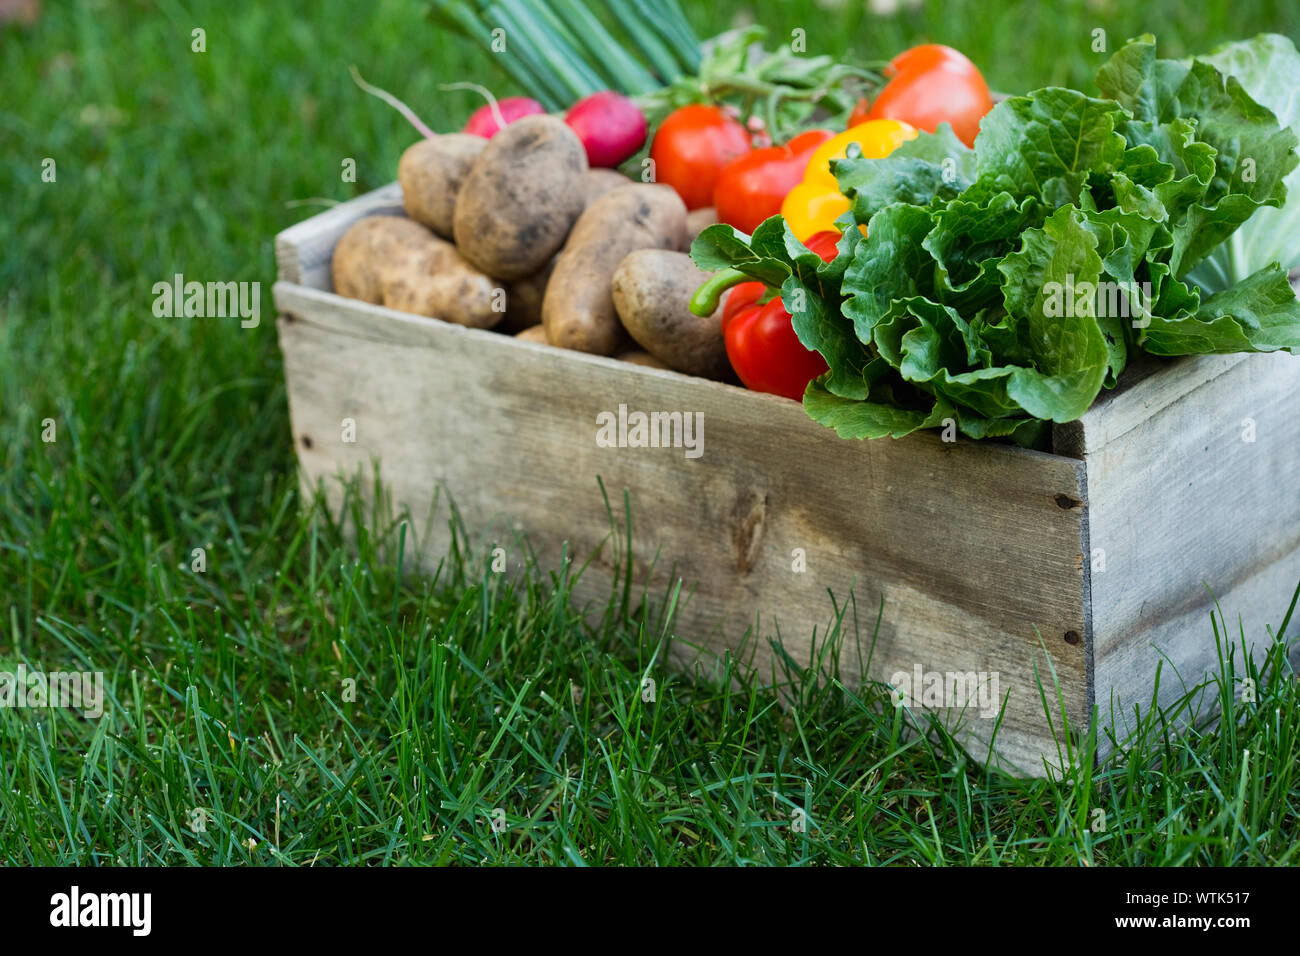 Caja de madera con verduras frescas sobre el césped Foto de stock